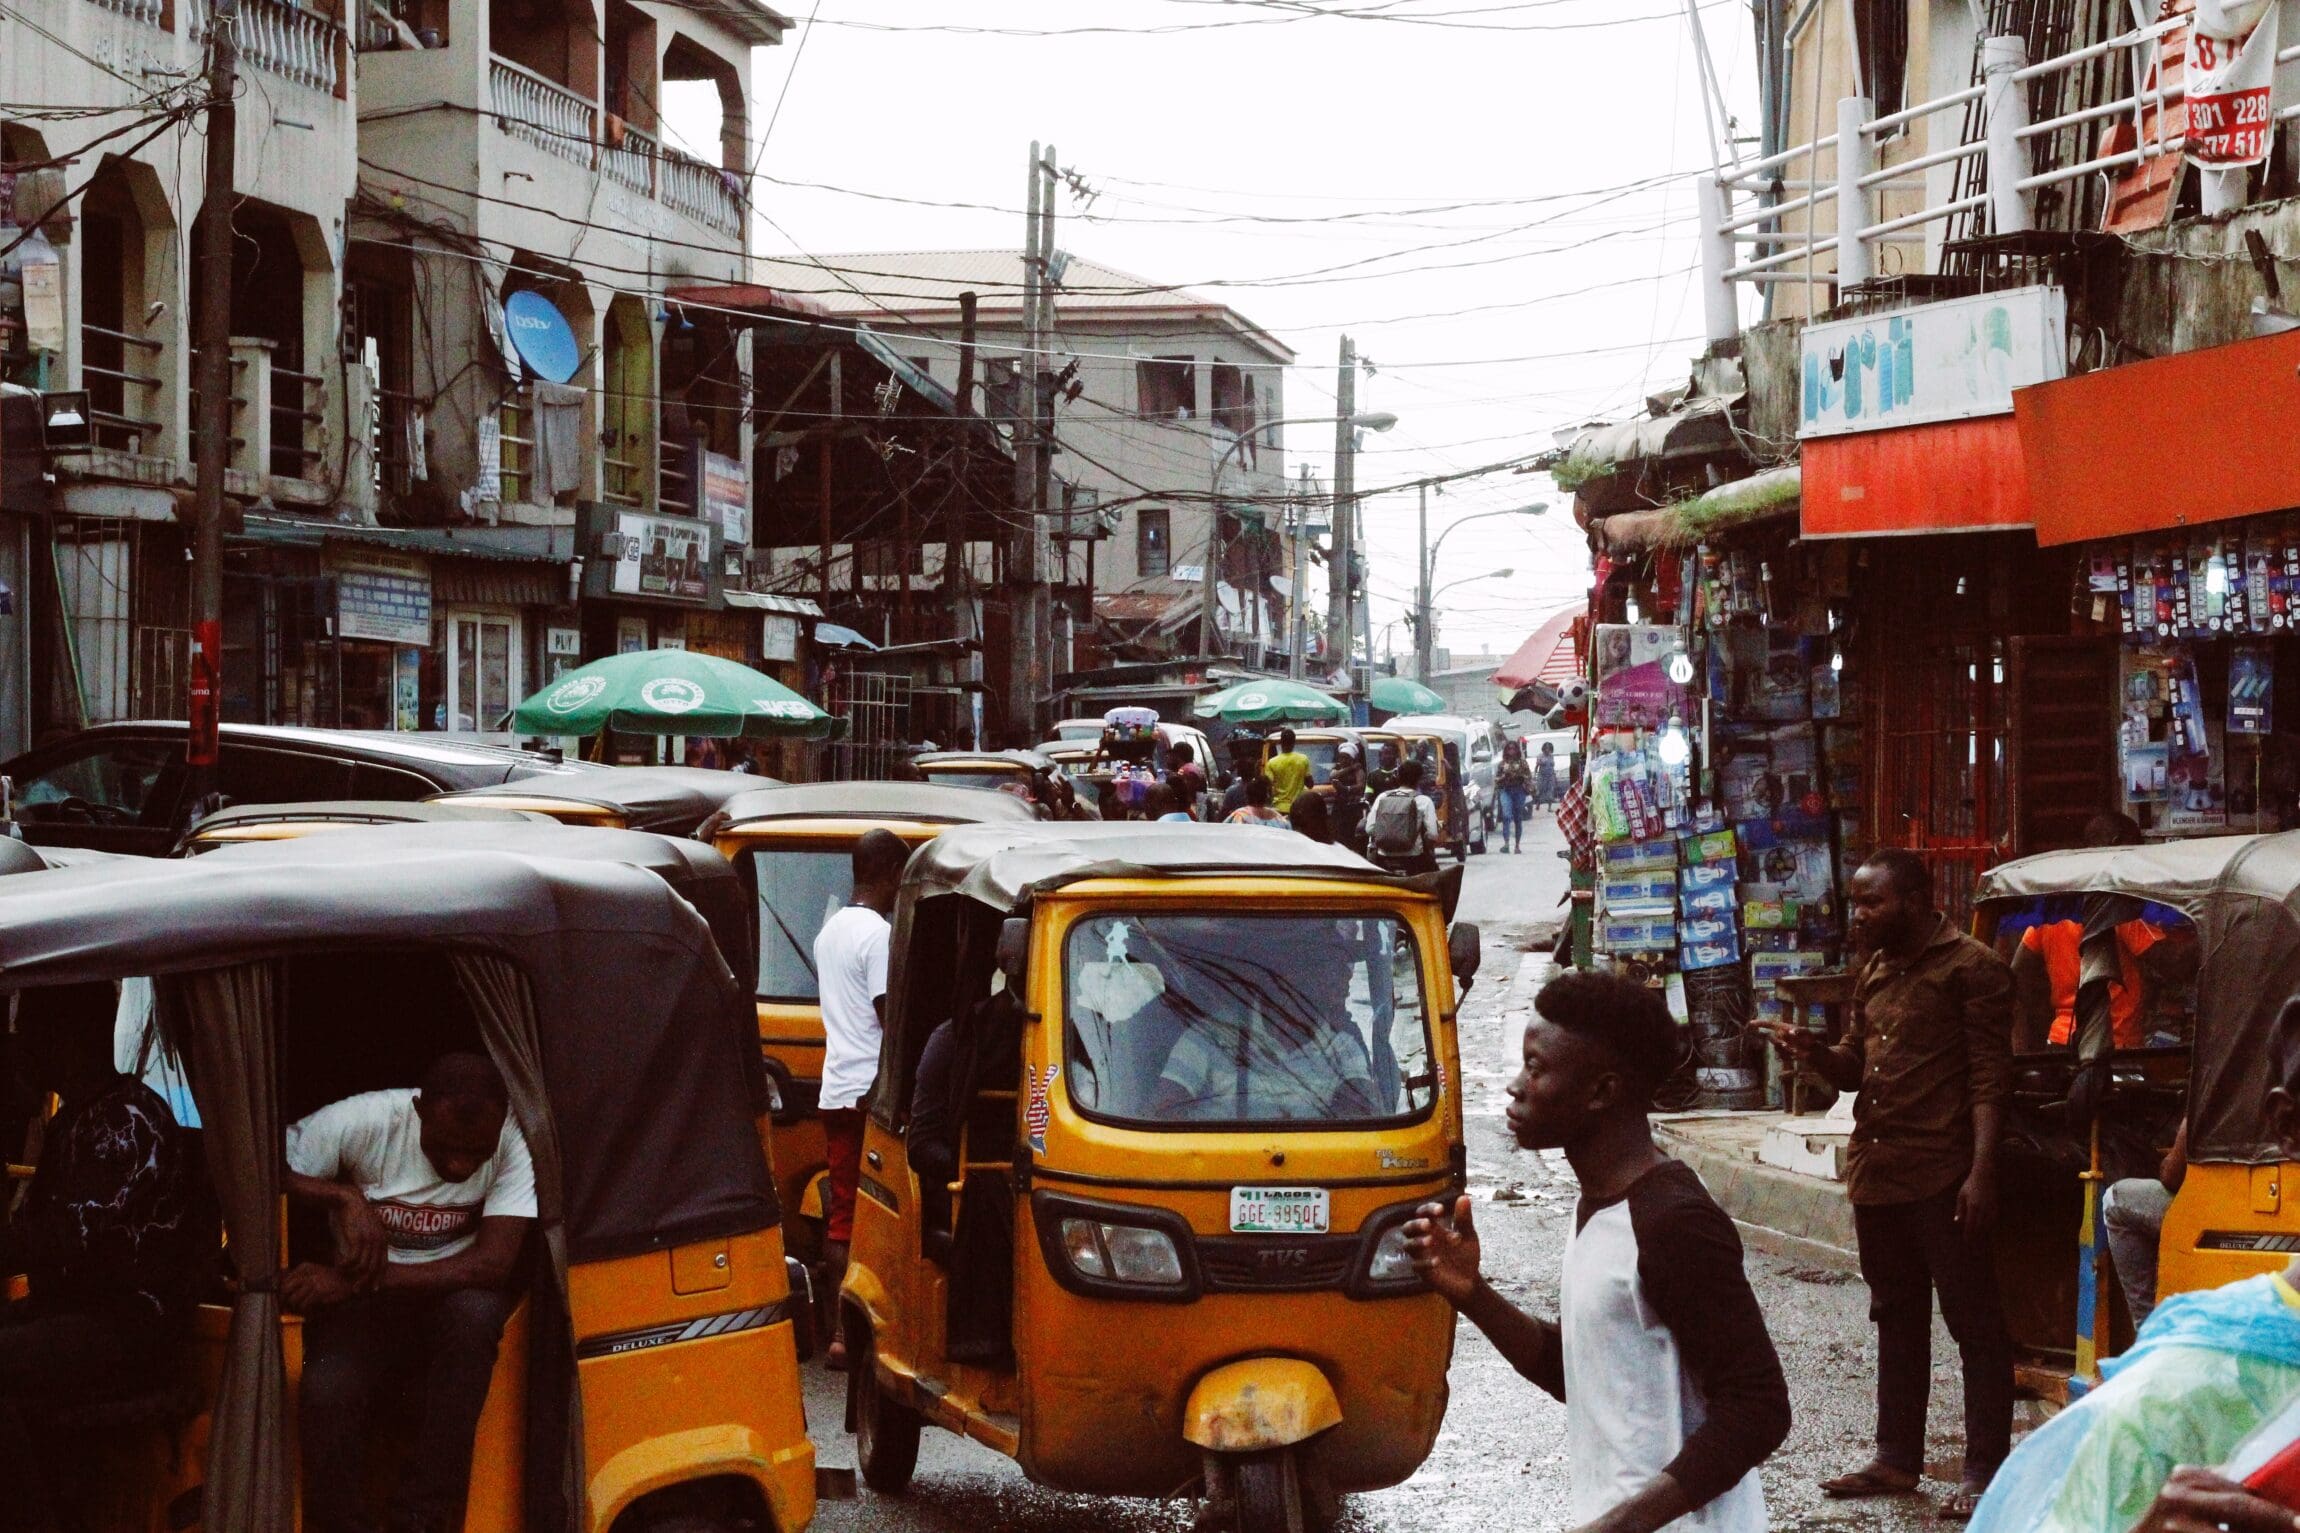 A Yoruba girl’s guide to the holiday season in Lagos | A Lagos street scene